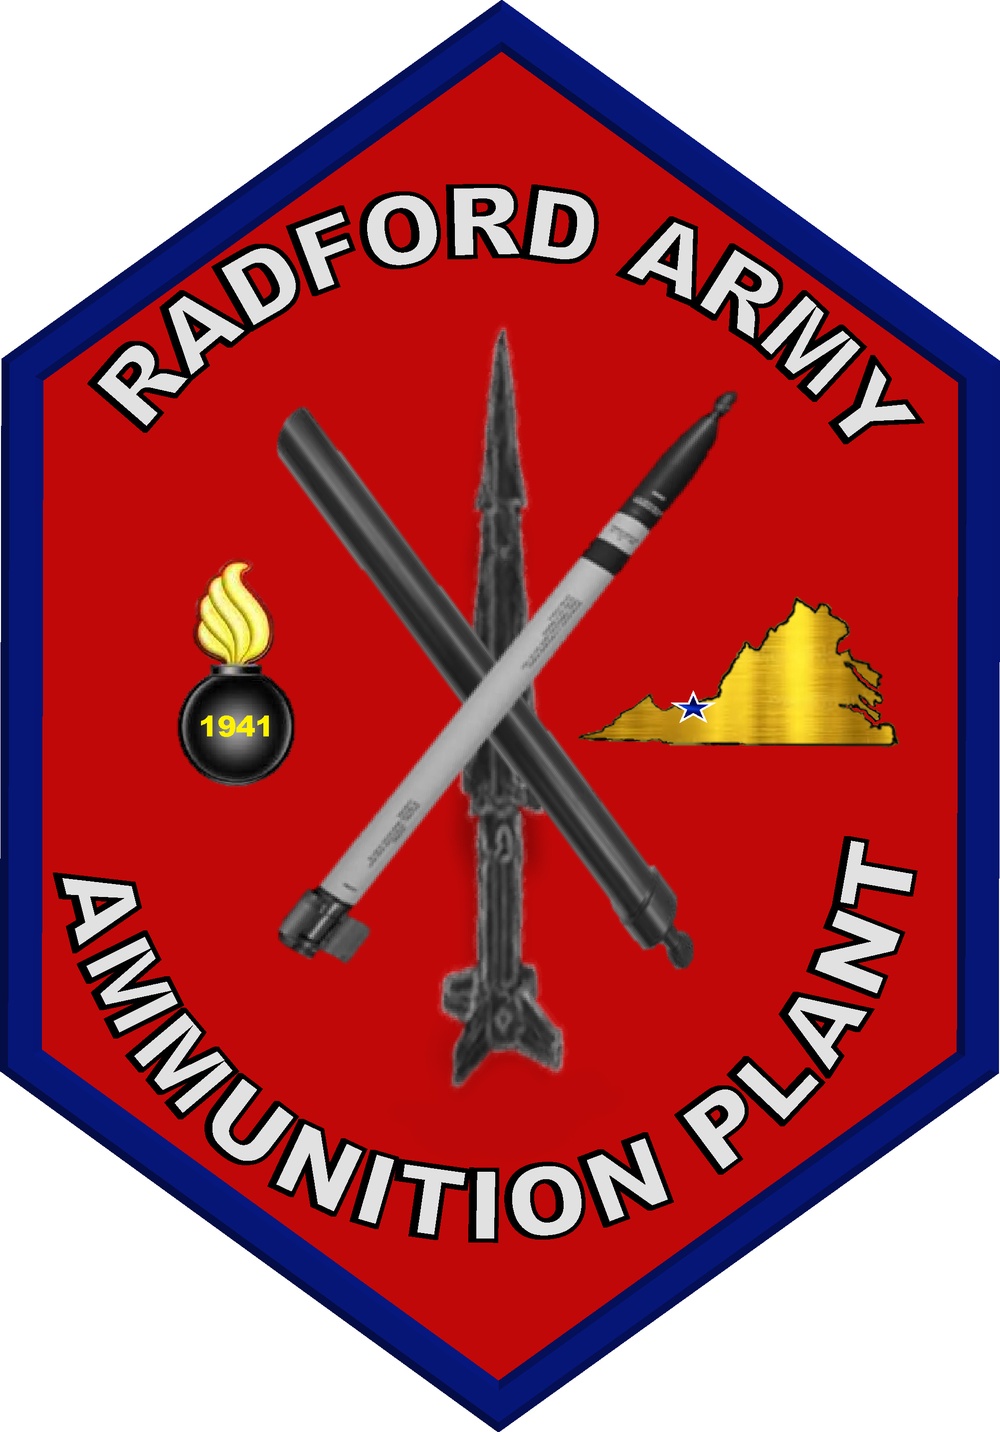 Radford Army Ammunition Plant jpg Logo